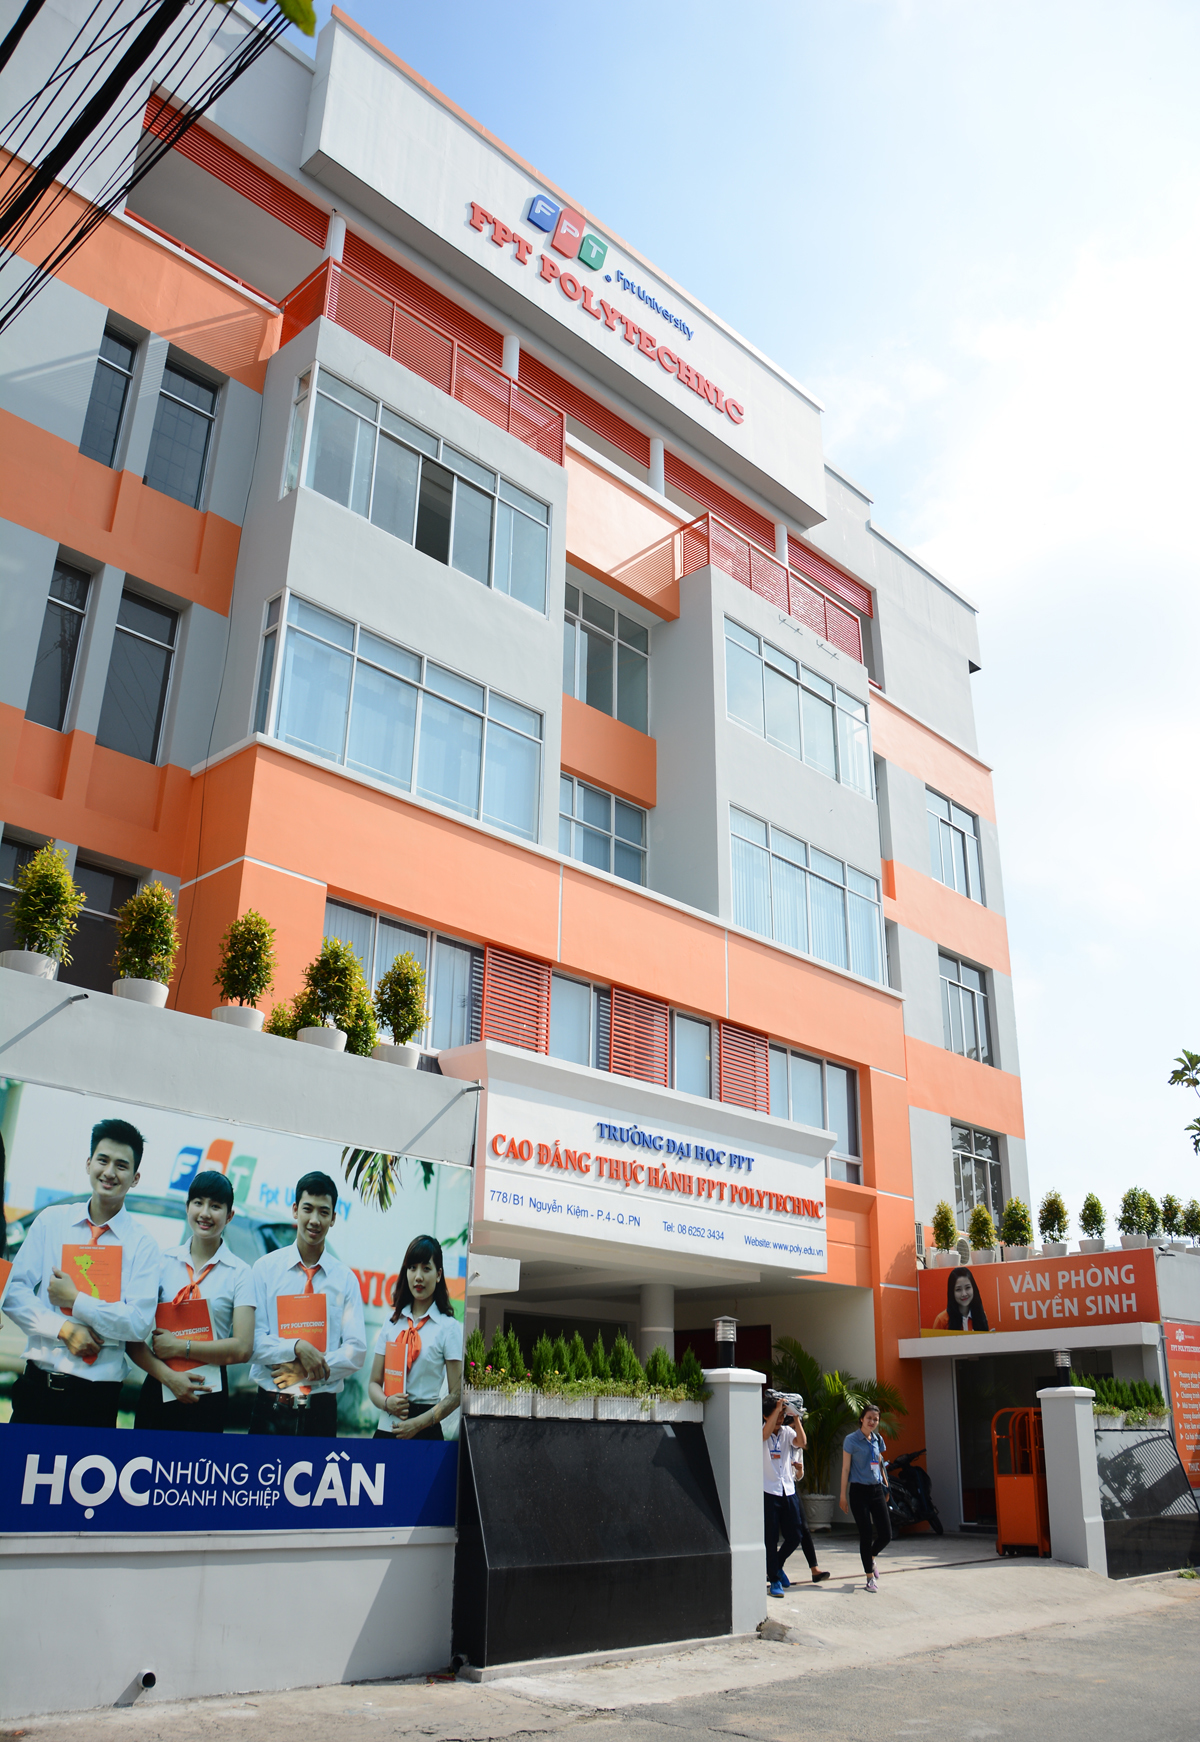 <p> Cơ sở mới của FPT Polytechnic HCM tọa lạc tại địa chỉ 778/B1 Nguyễn Kiệm, phường 4, quận Phú Nhuận, với tổng diện tích sàn khoảng 2.700m2.</p>